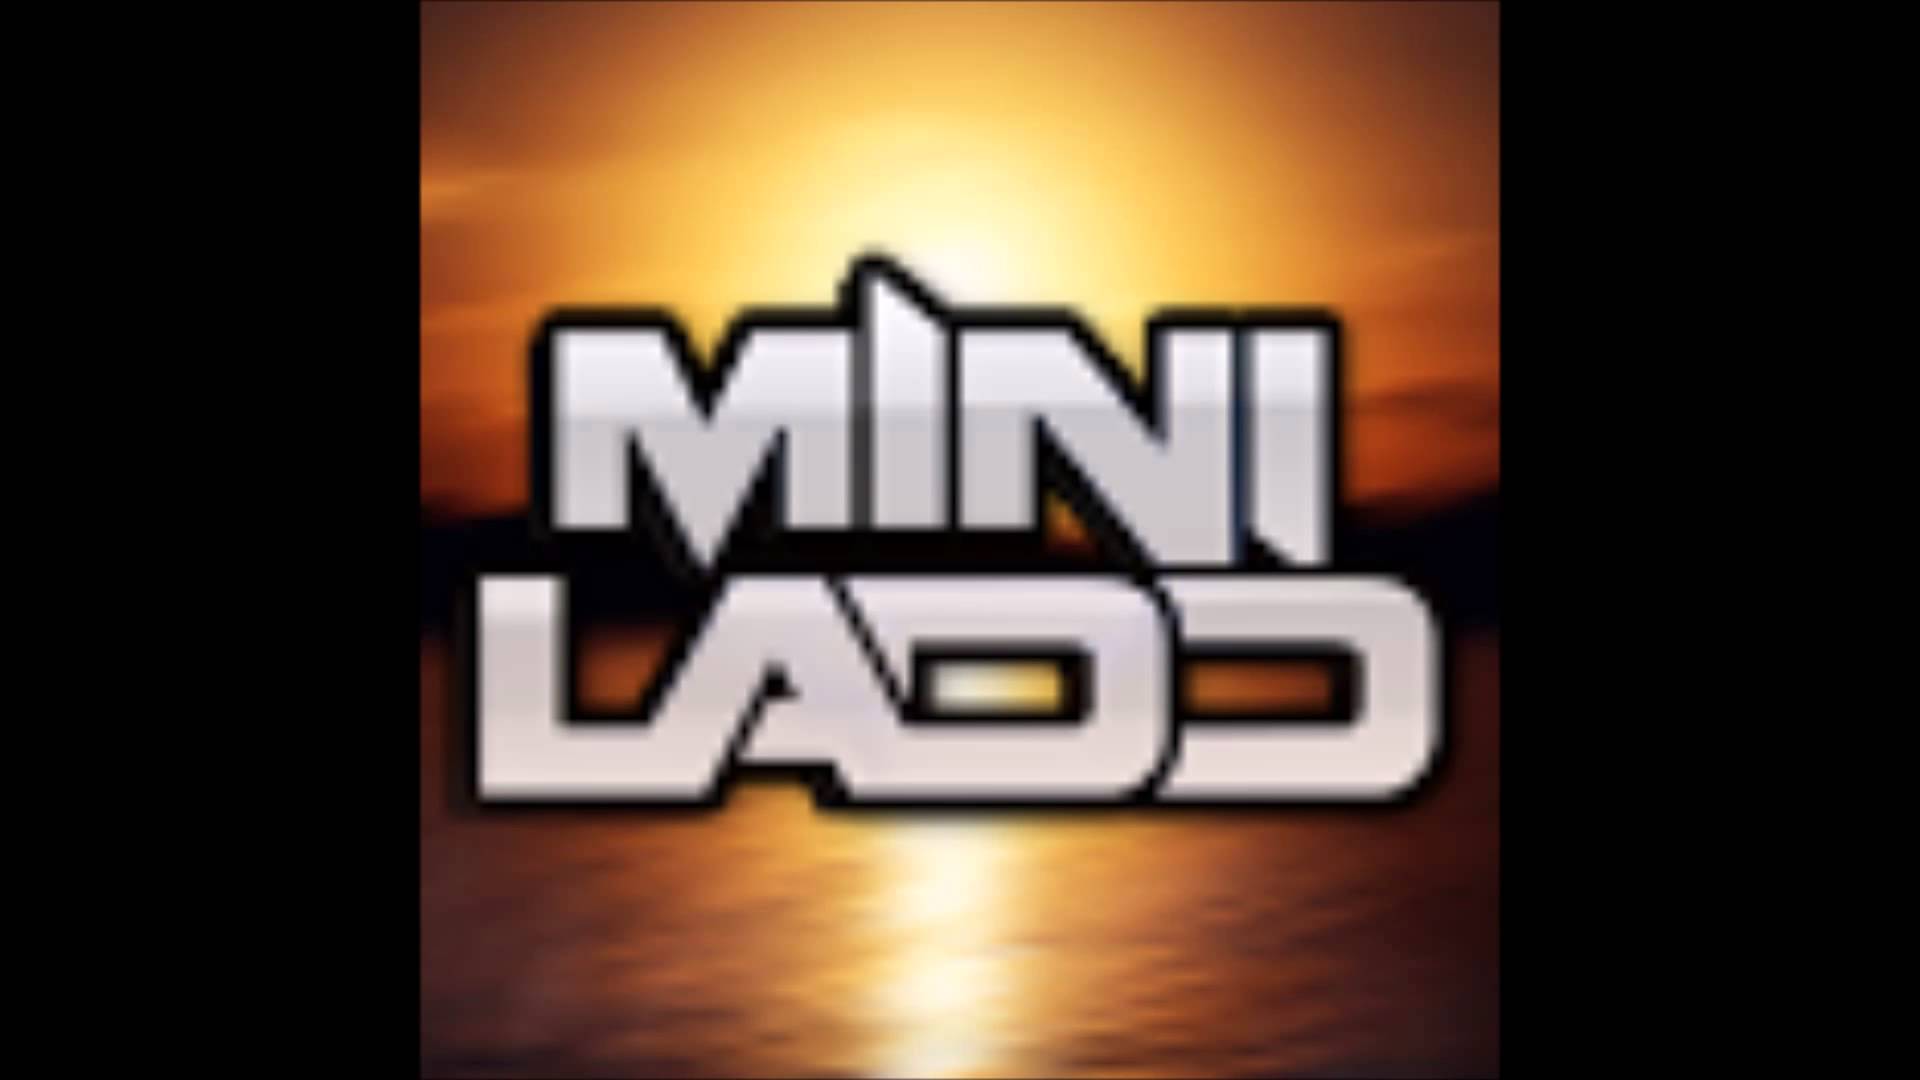 Ladd Logo - Mini Ladd Wallpapers - Wallpaper Cave